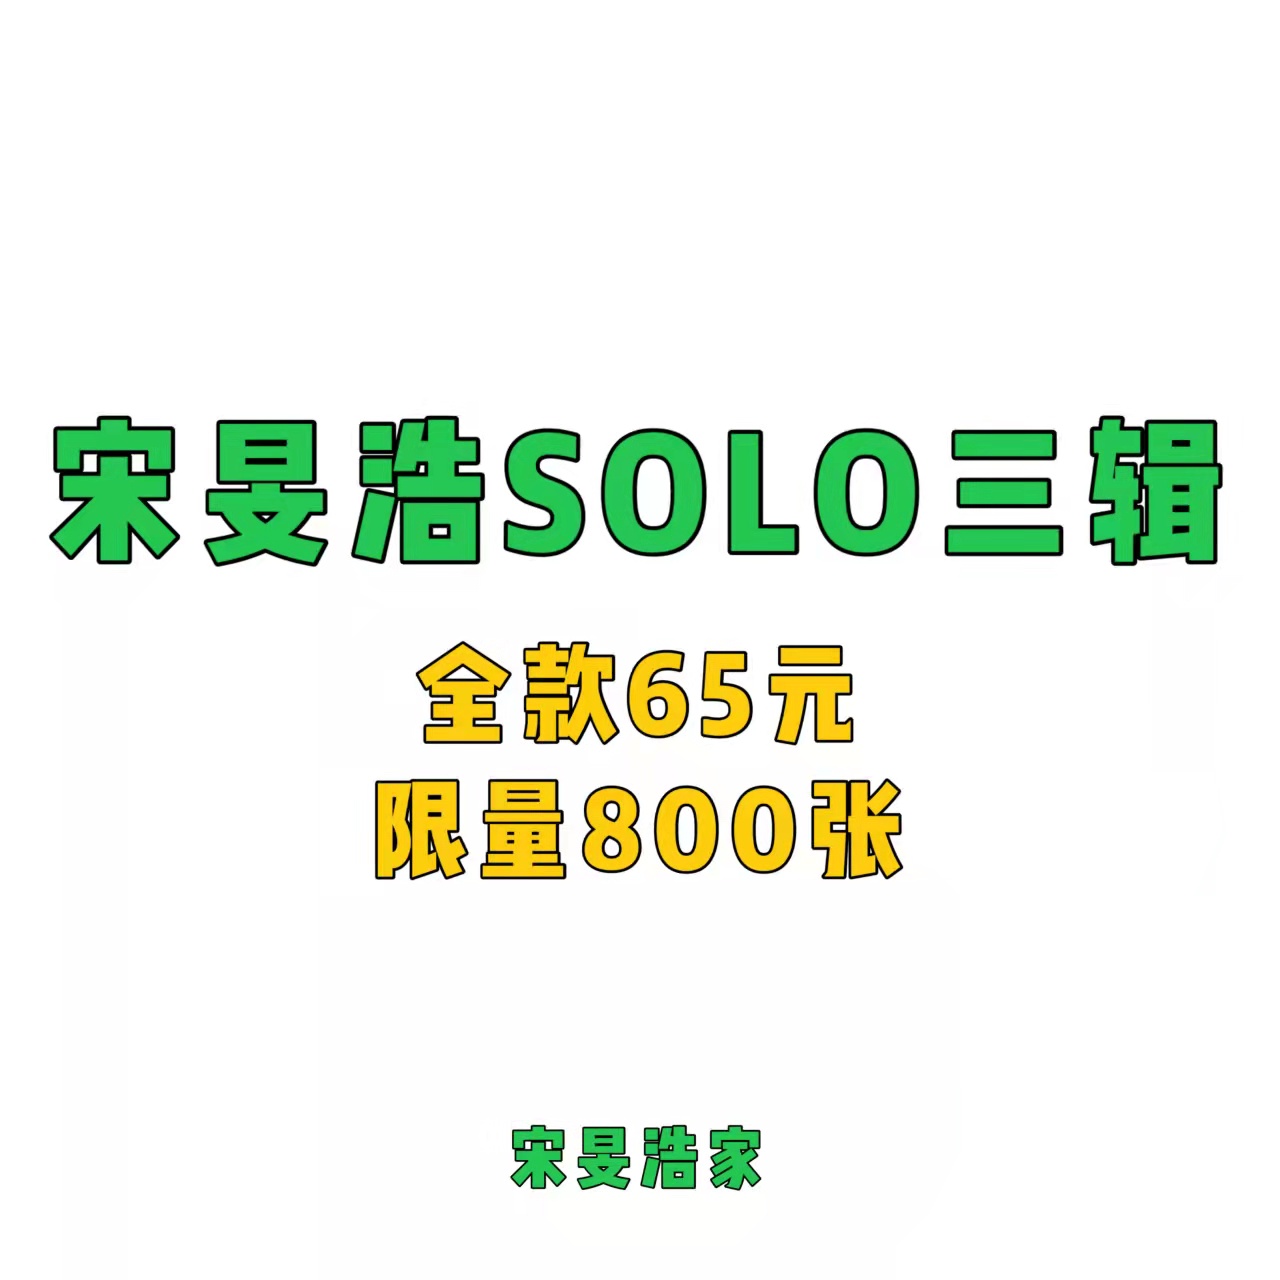 [全款 限量800张 补贴专] MINO - MINO 3rd FULL ALBUM_宋旻浩吧